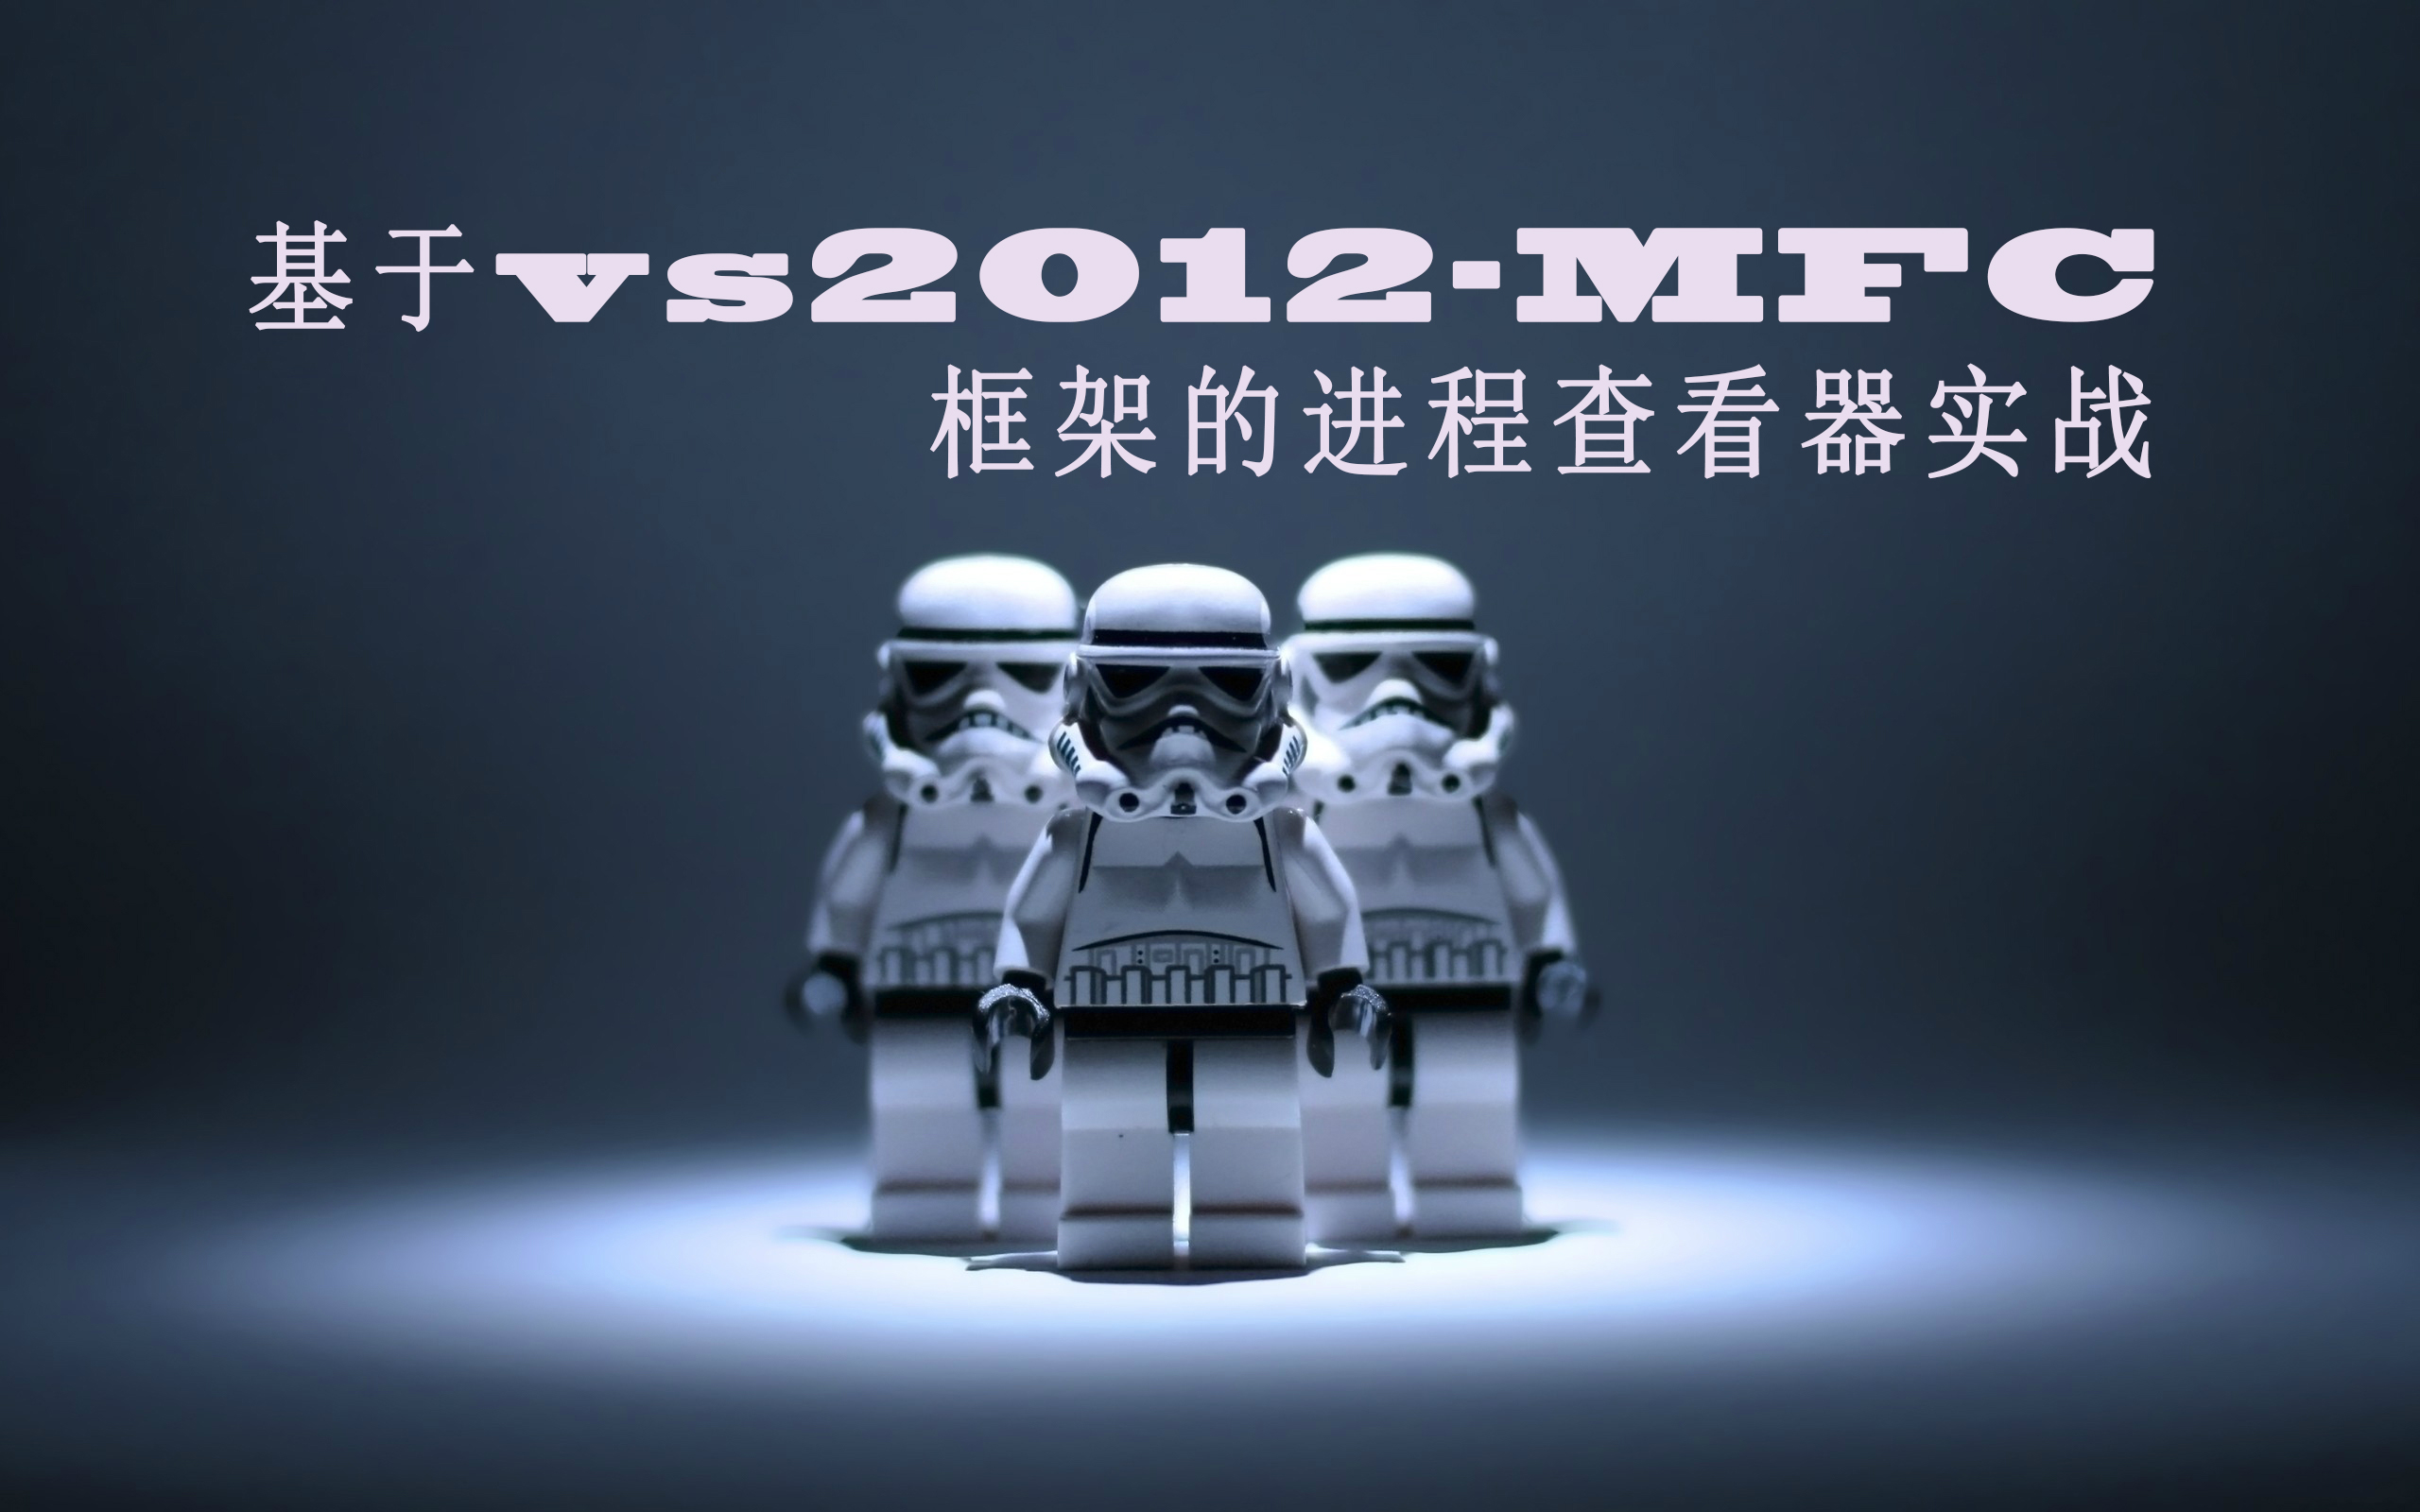 基于vs2012-MFC框架的进程查看器实战视频课程